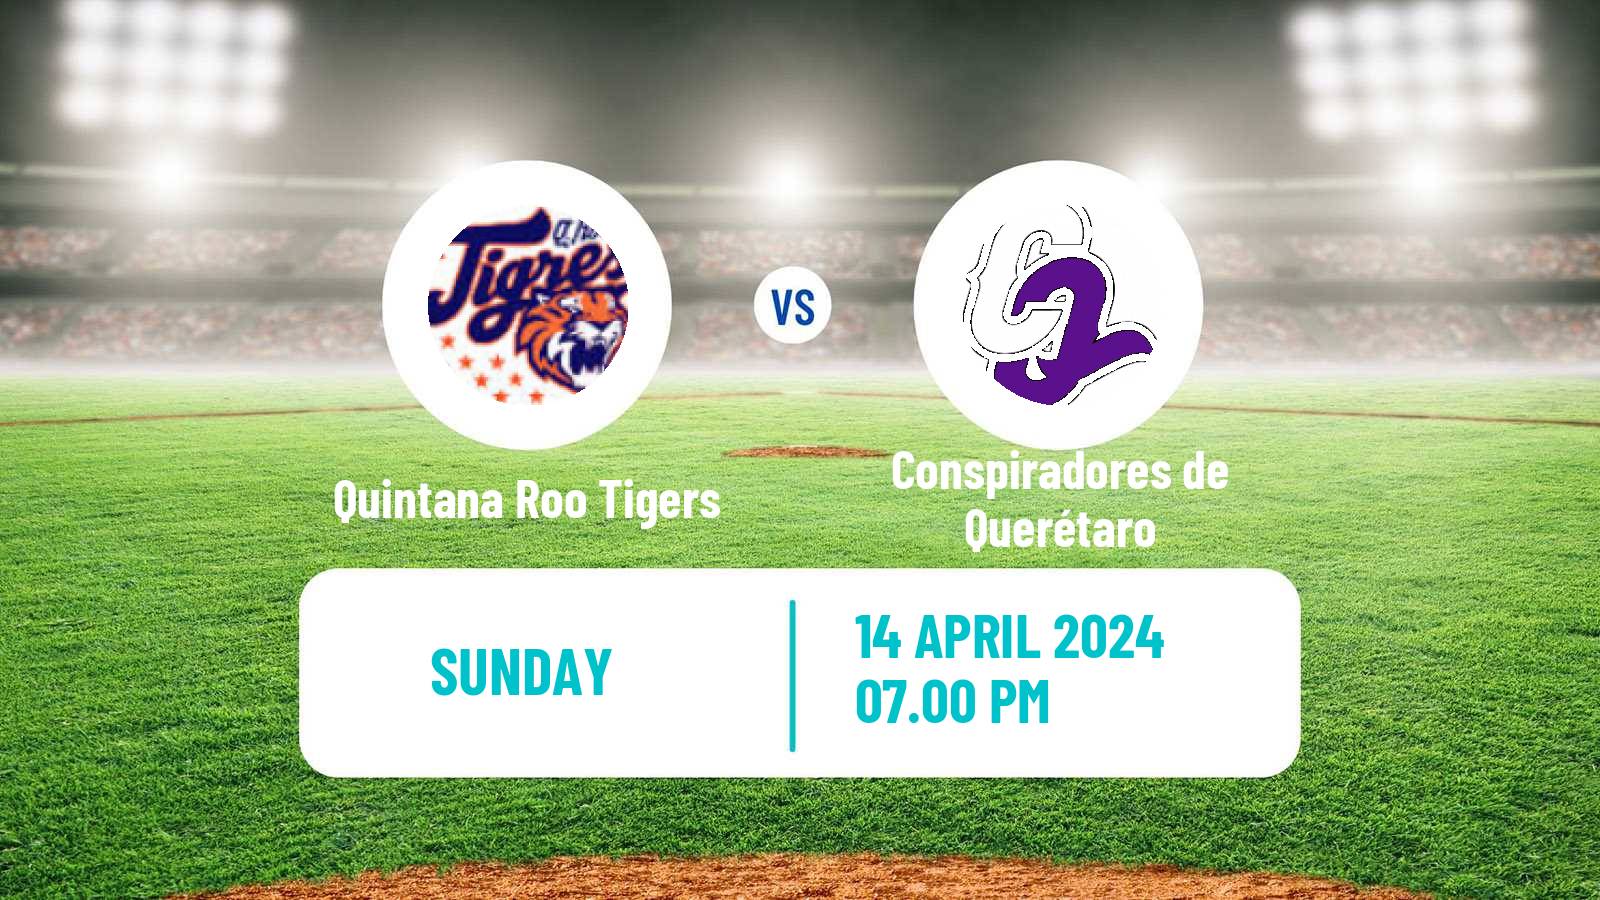 Baseball LMB Quintana Roo Tigers - Conspiradores de Querétaro